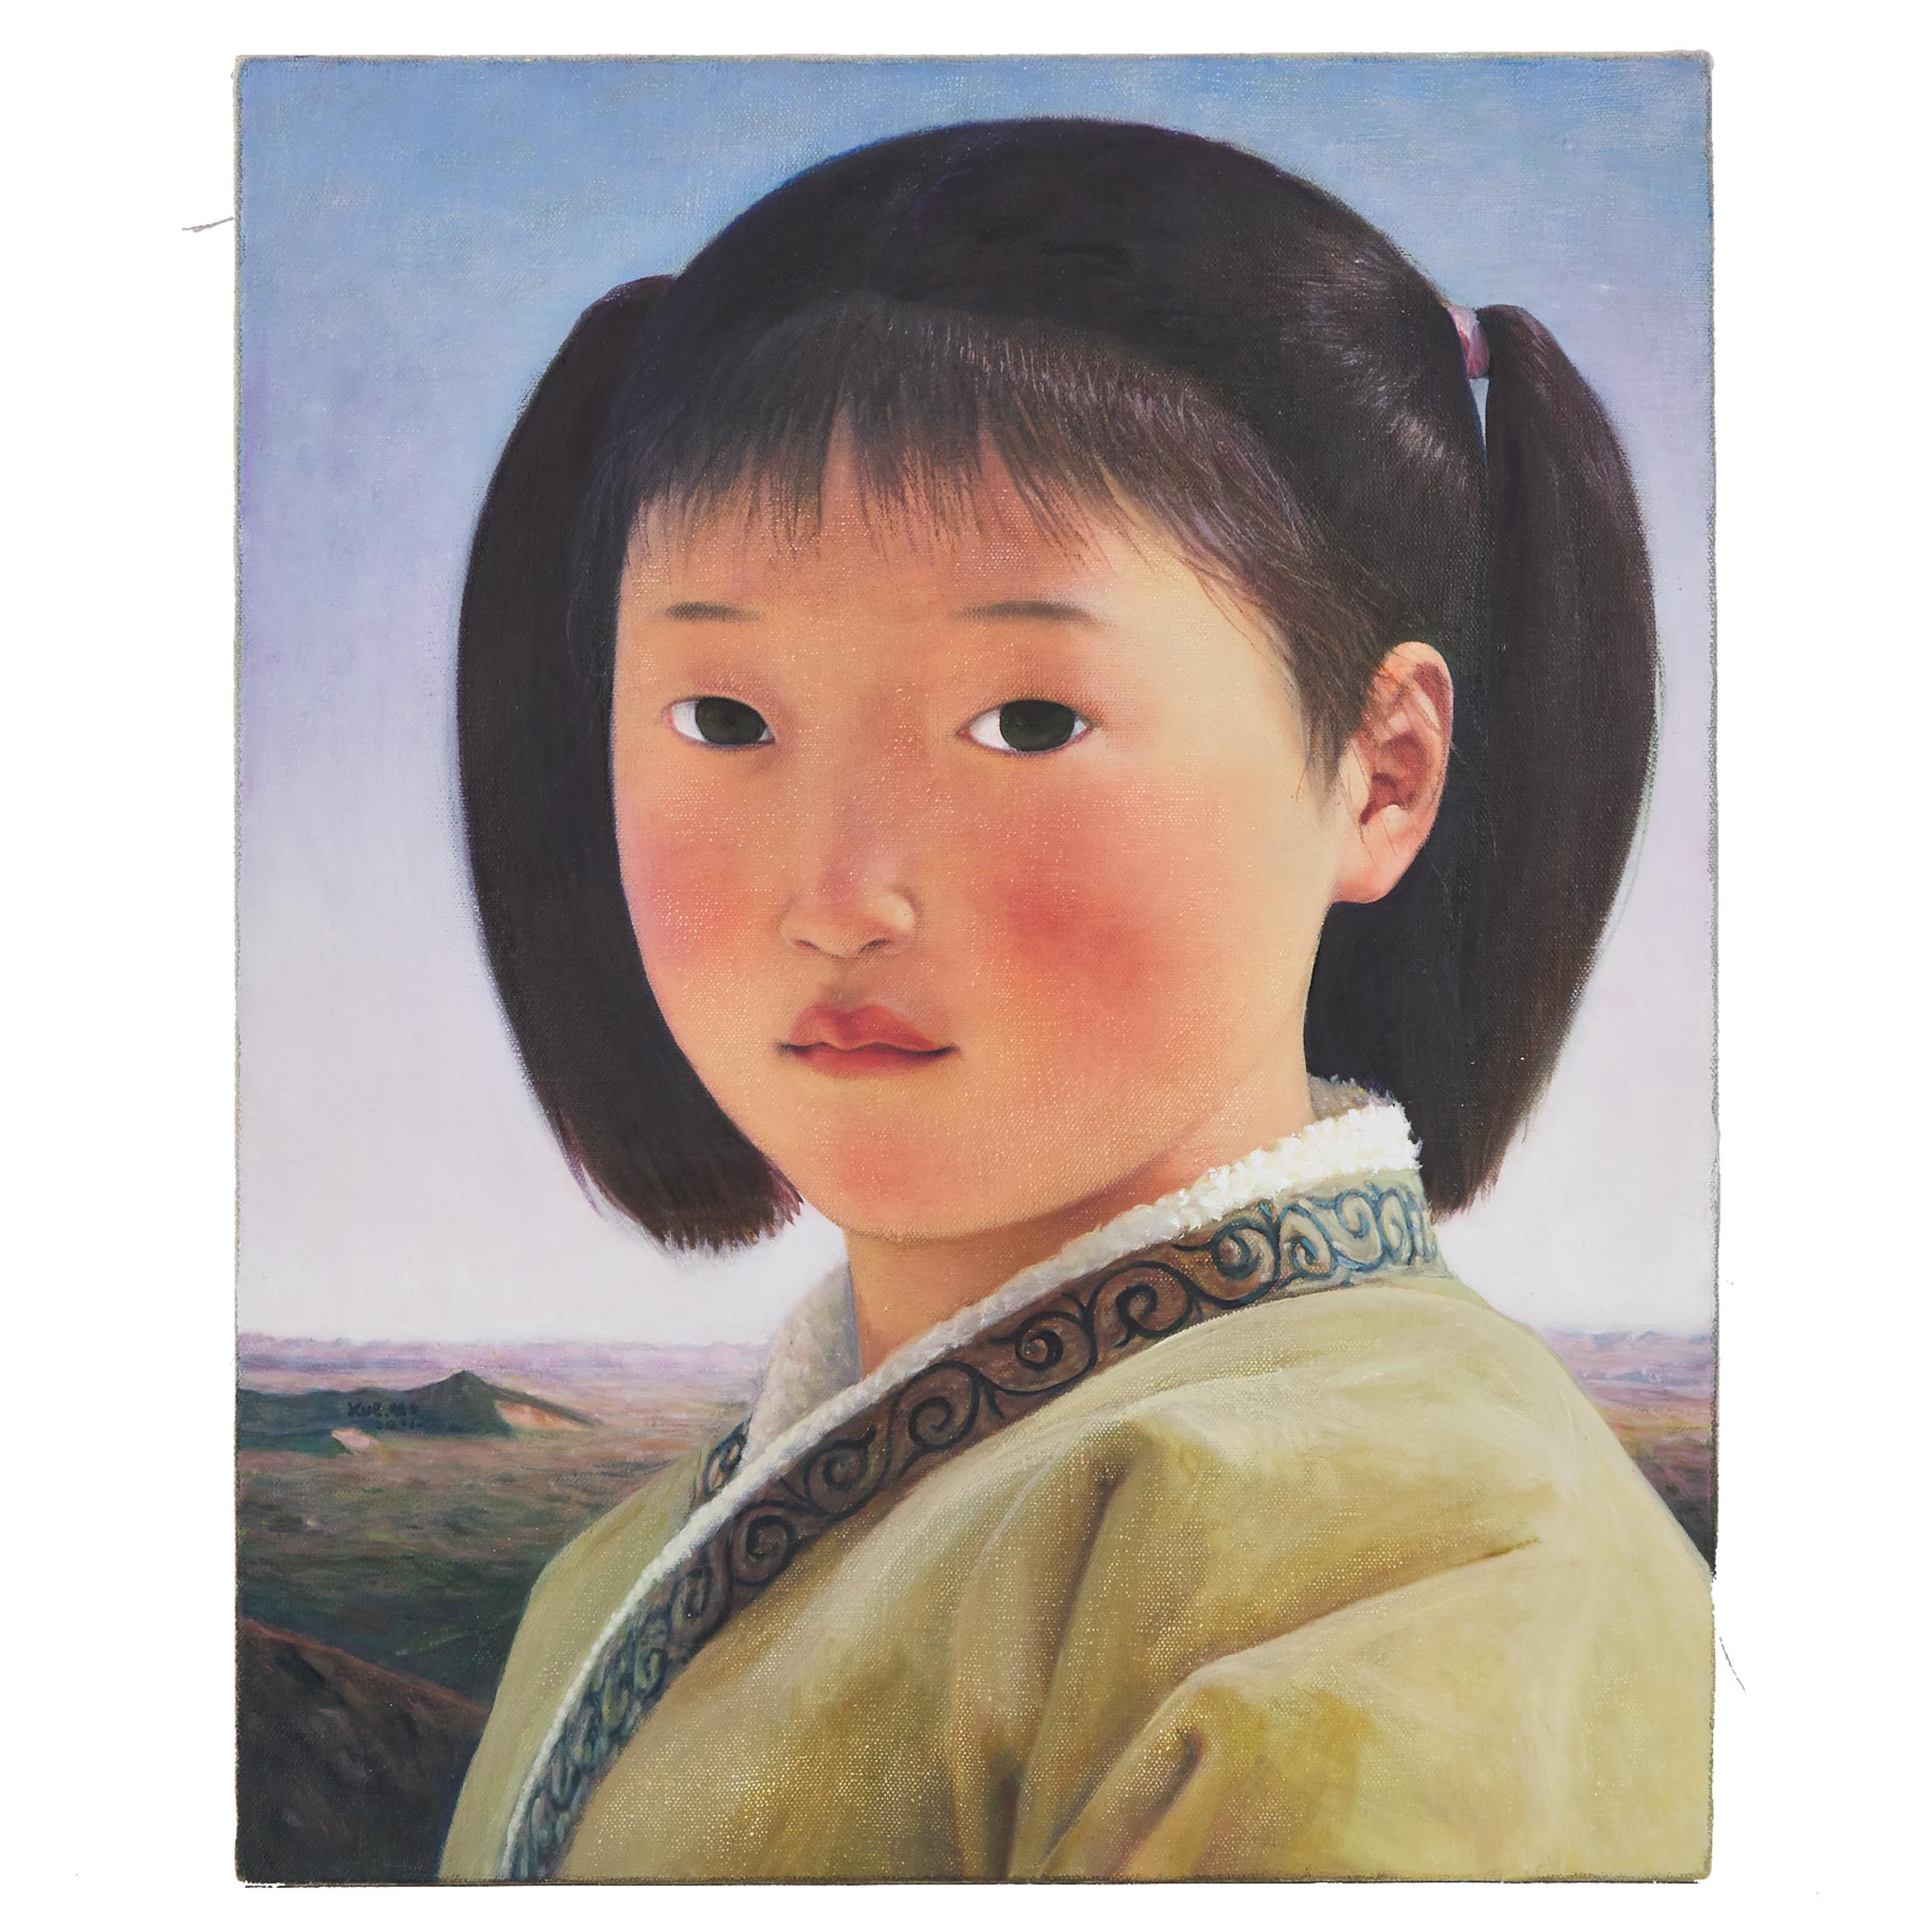 Xue Mo (Chinese/Canadian, 1966-), Mongolian Girl